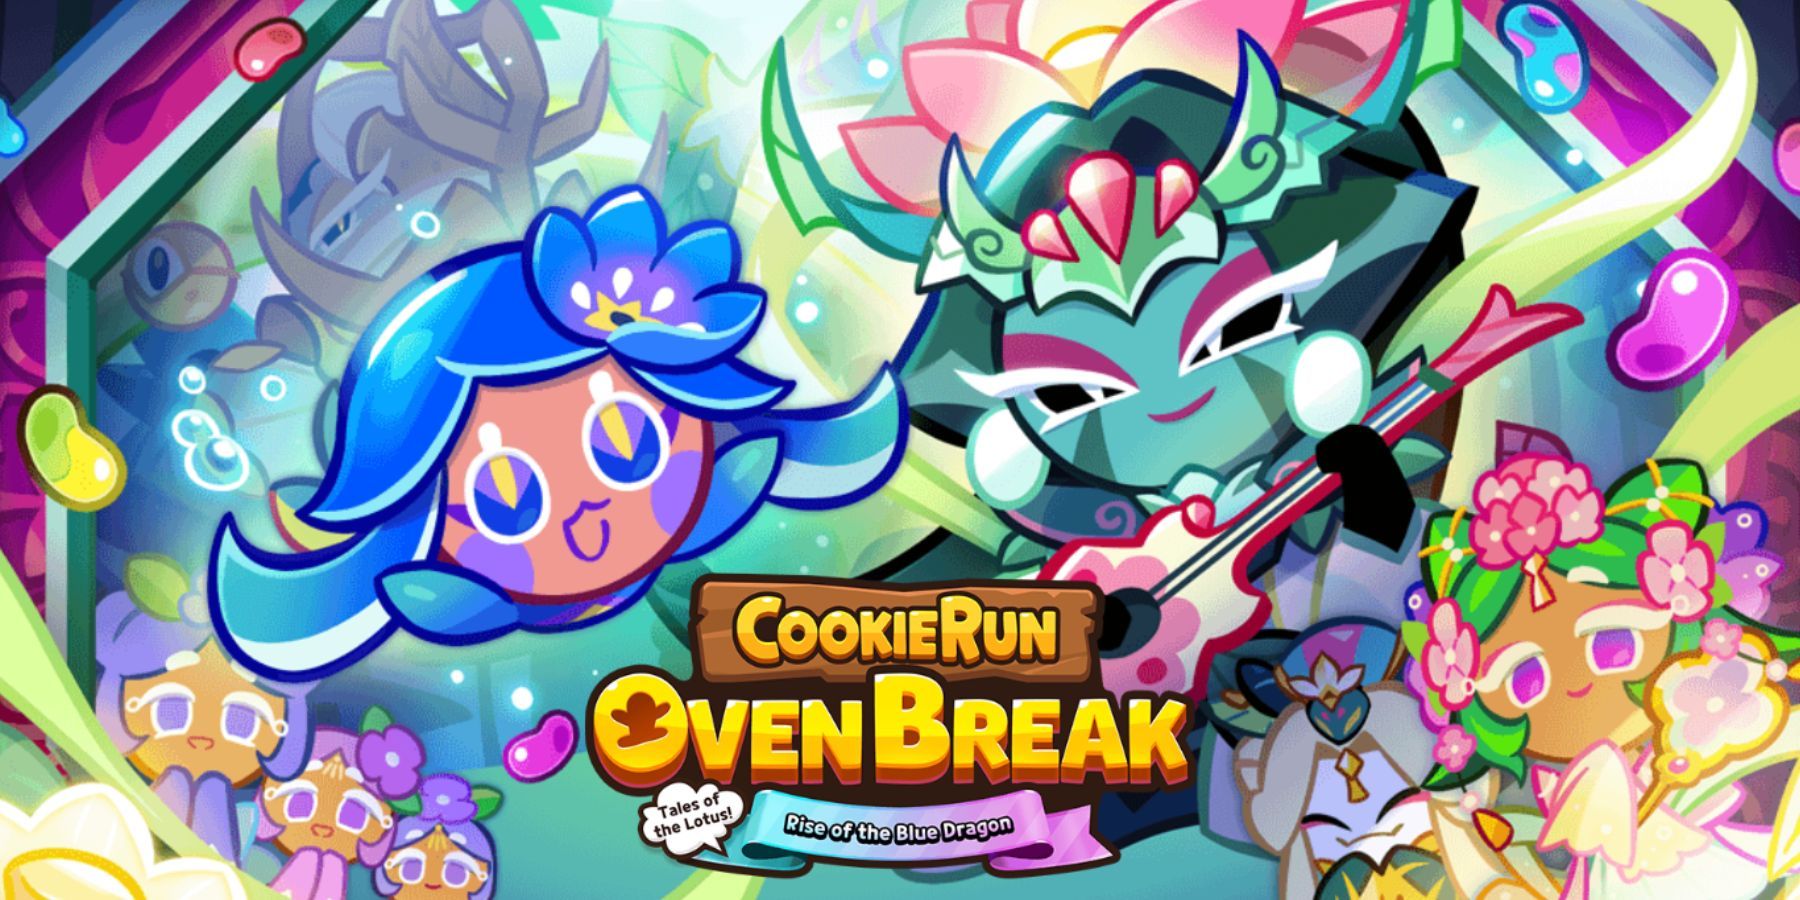 Cookie Run OvenBreak - How to Get Crystals